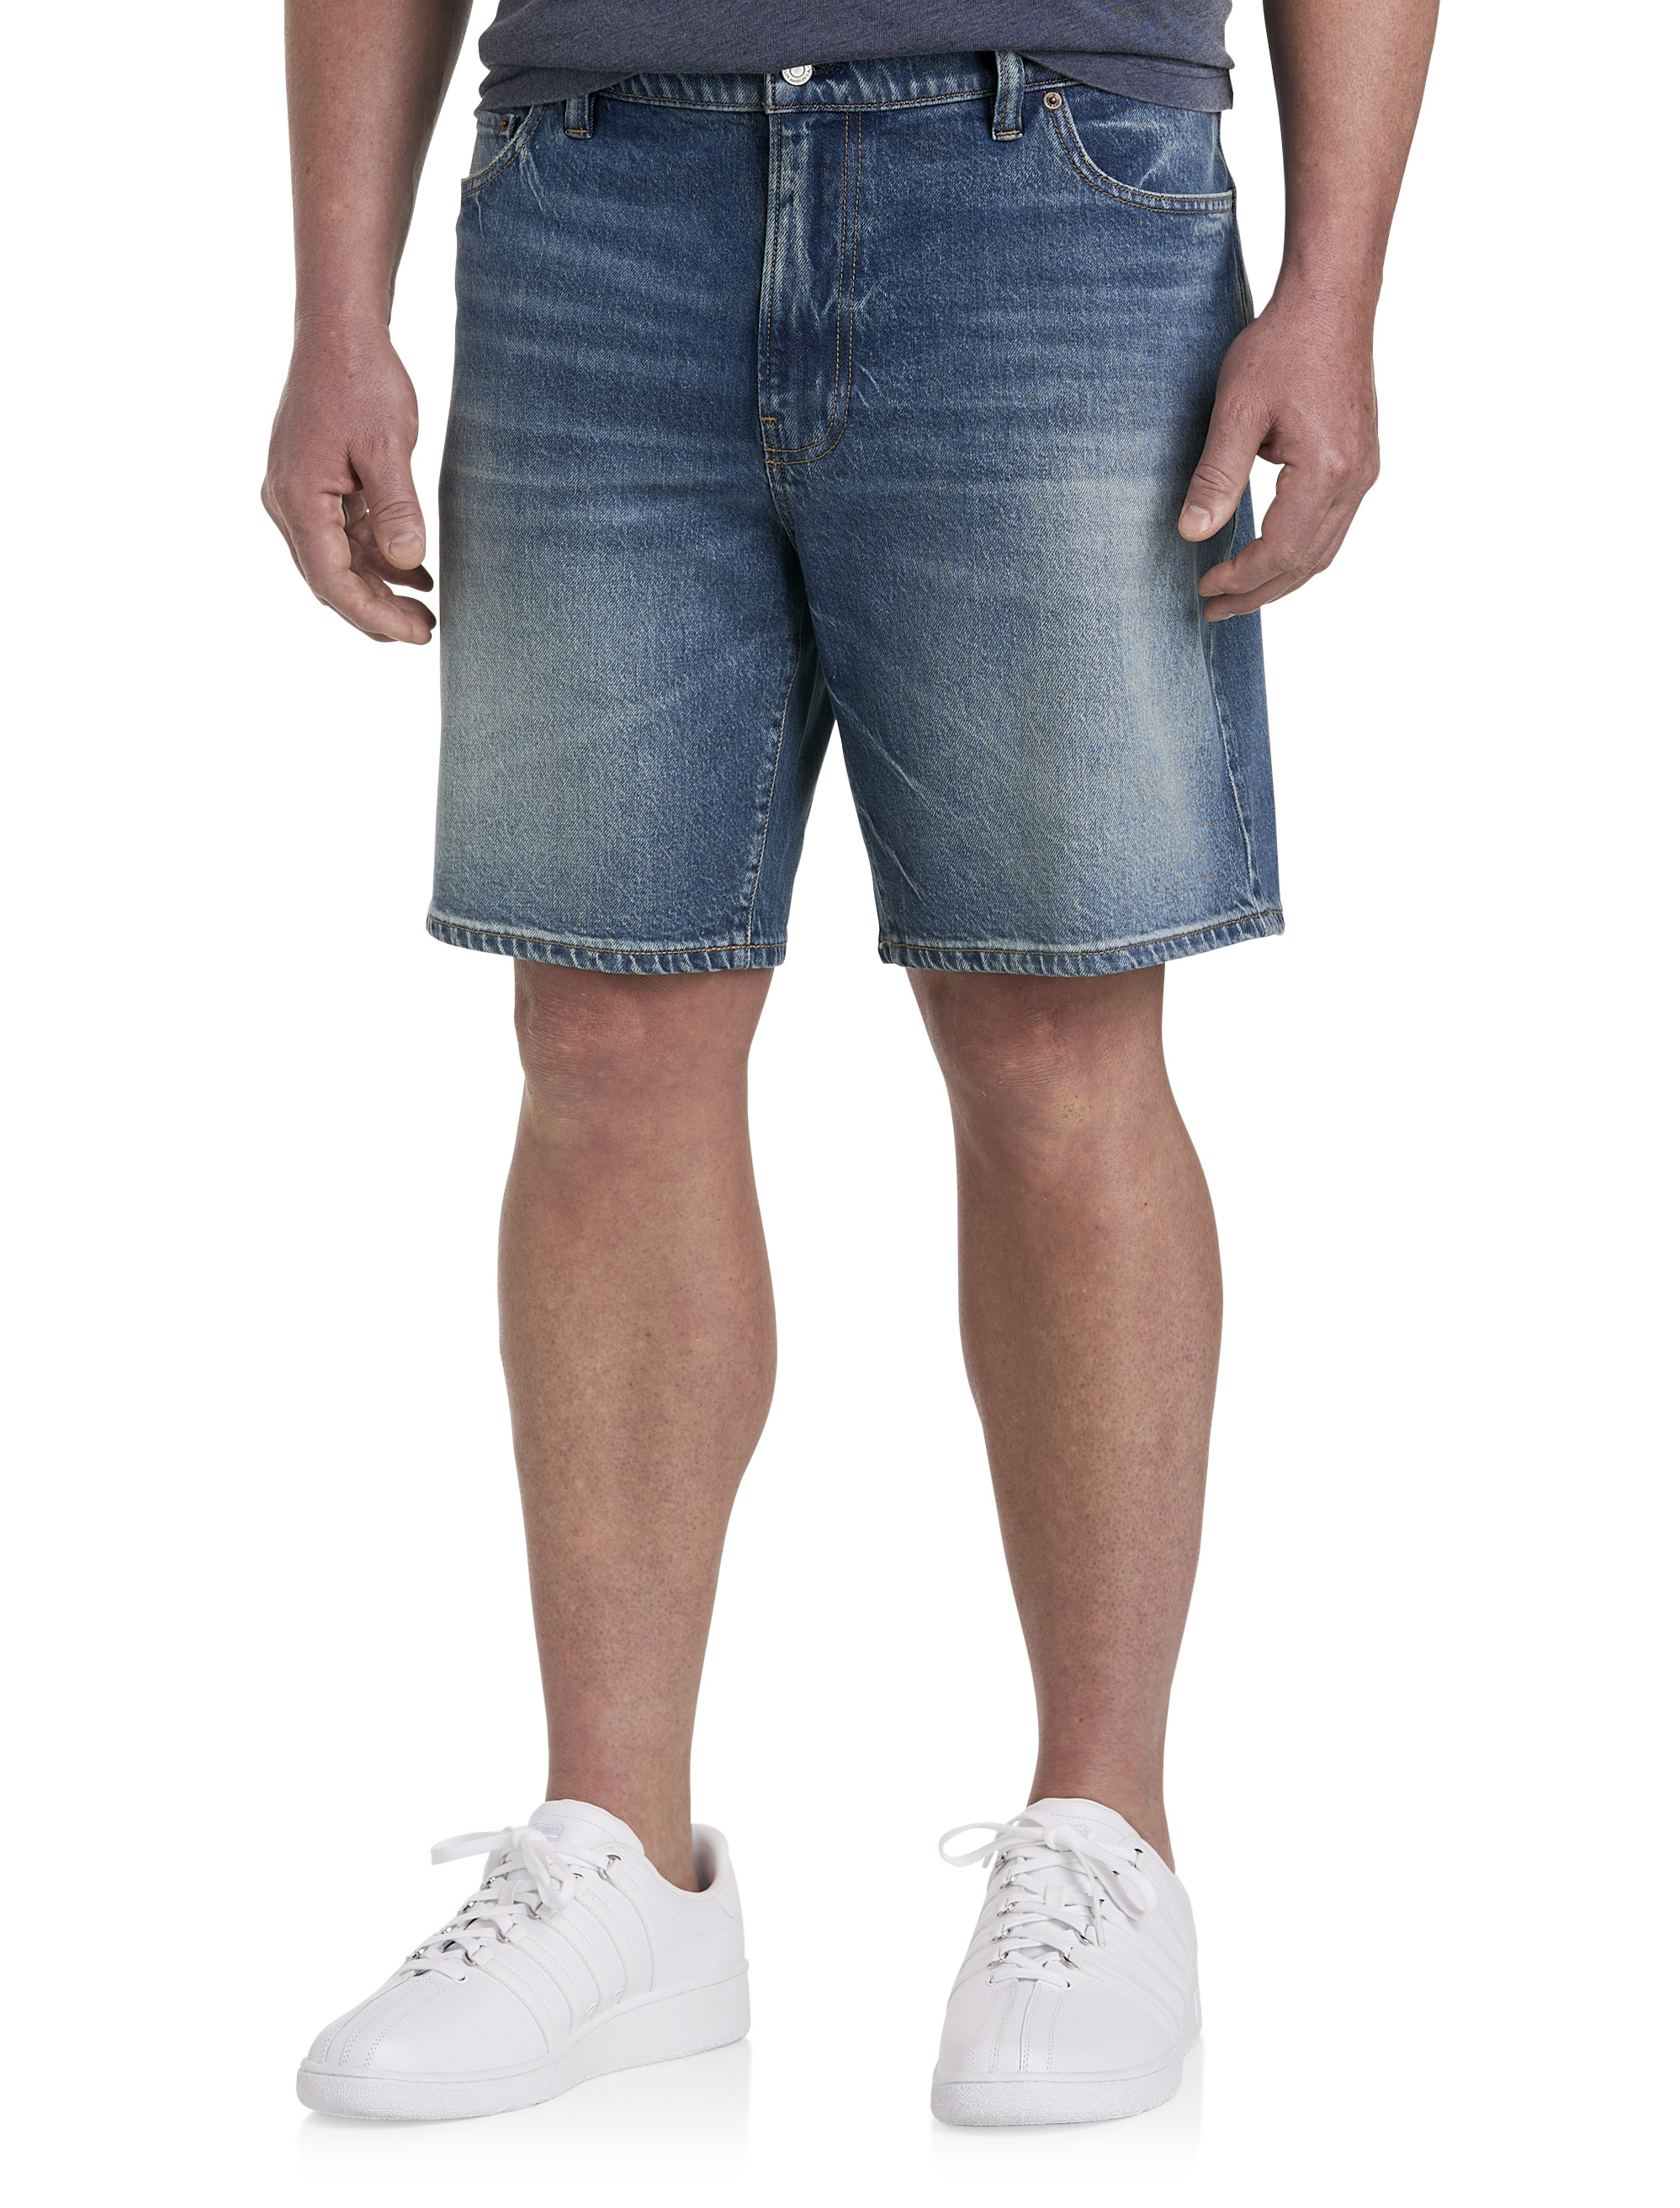 Vintage Loose Denim Shorts